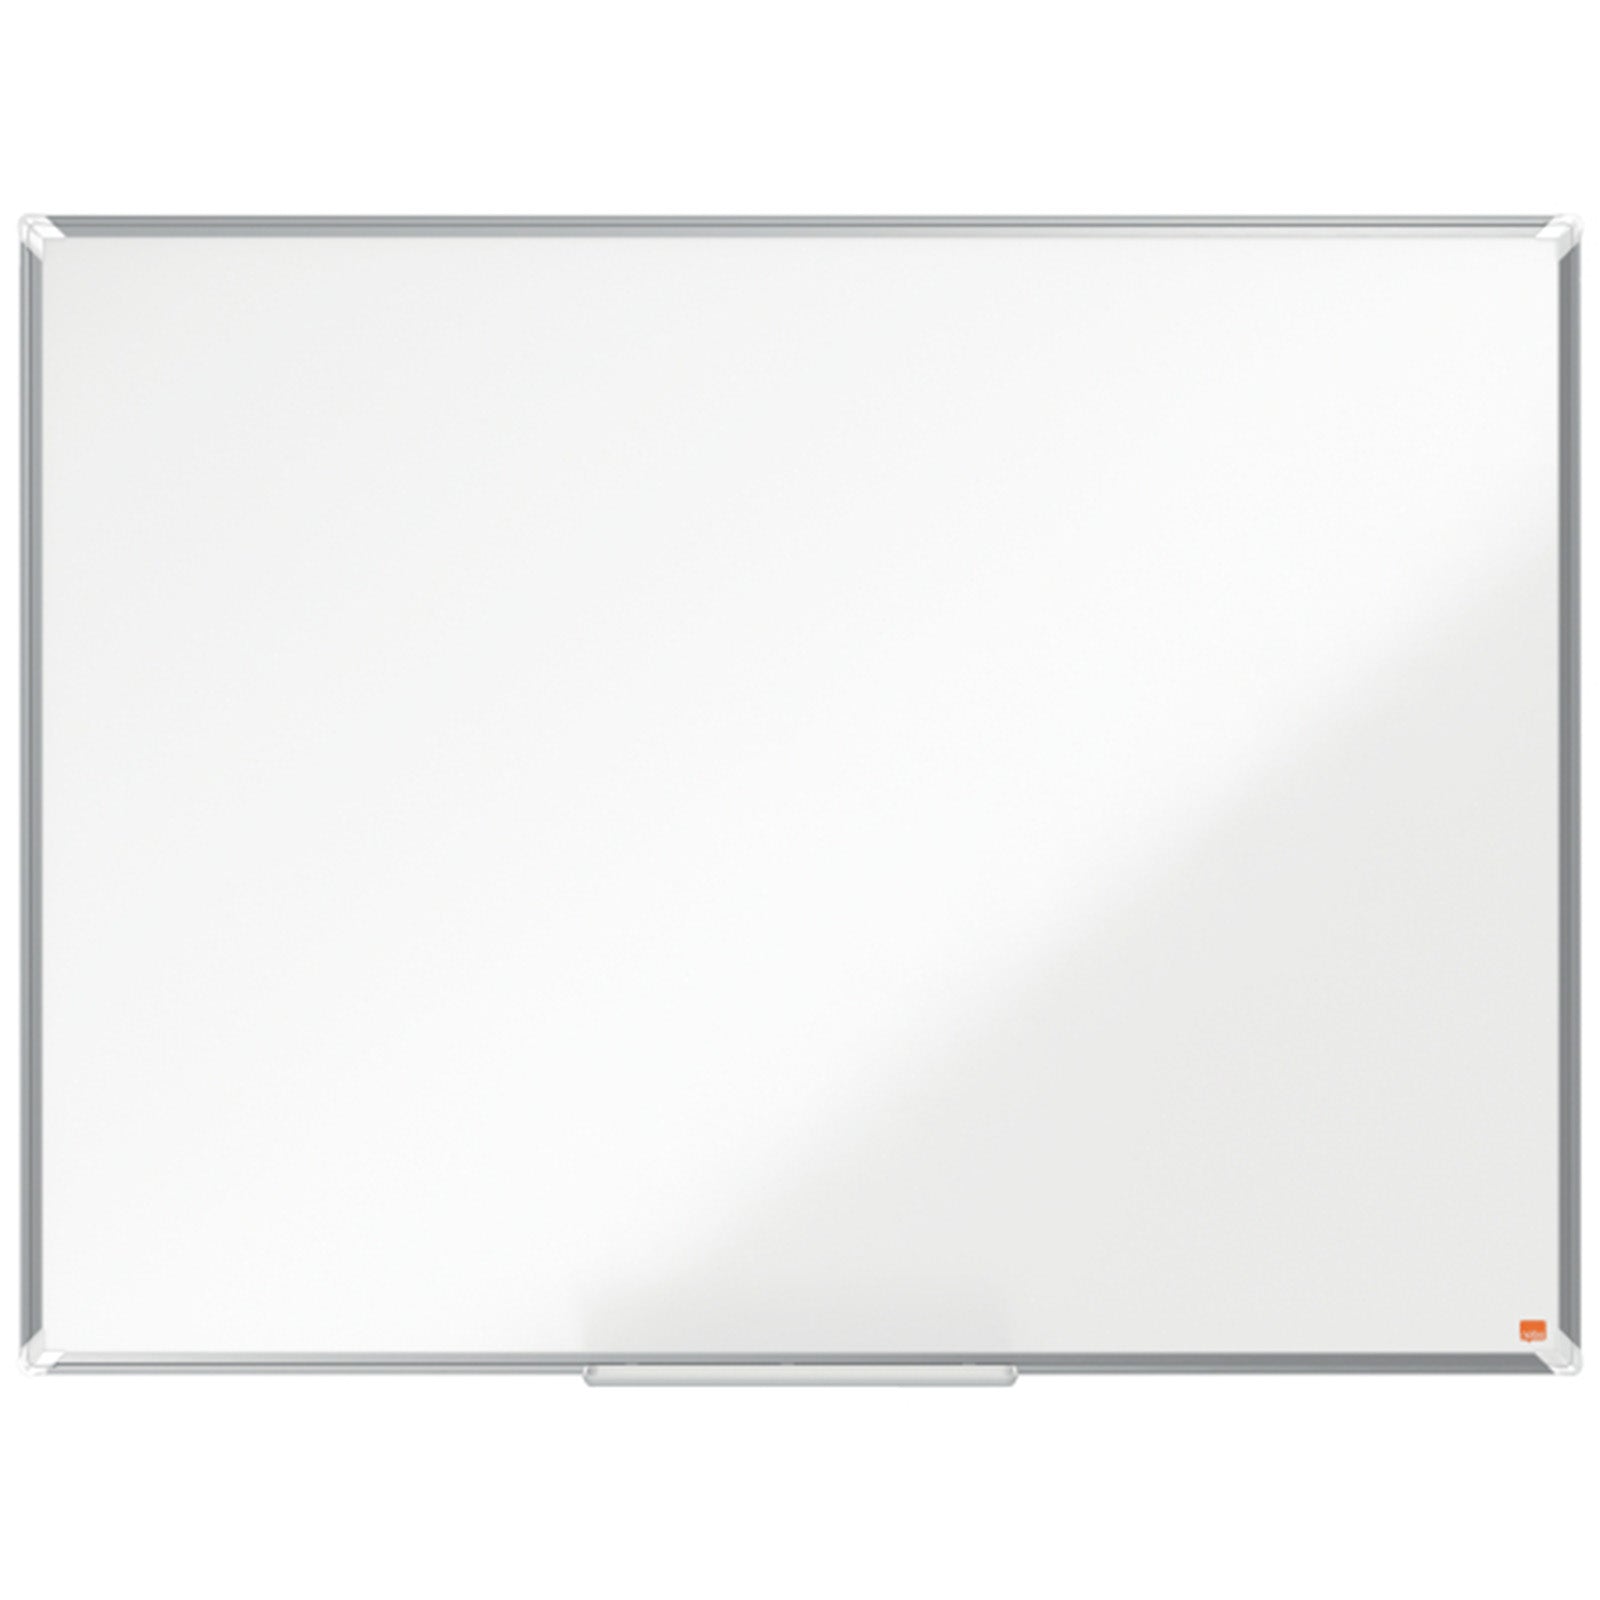 Nobo Whiteboard Premium Plus | Melamin-Oberfläche | Große Stiftablage